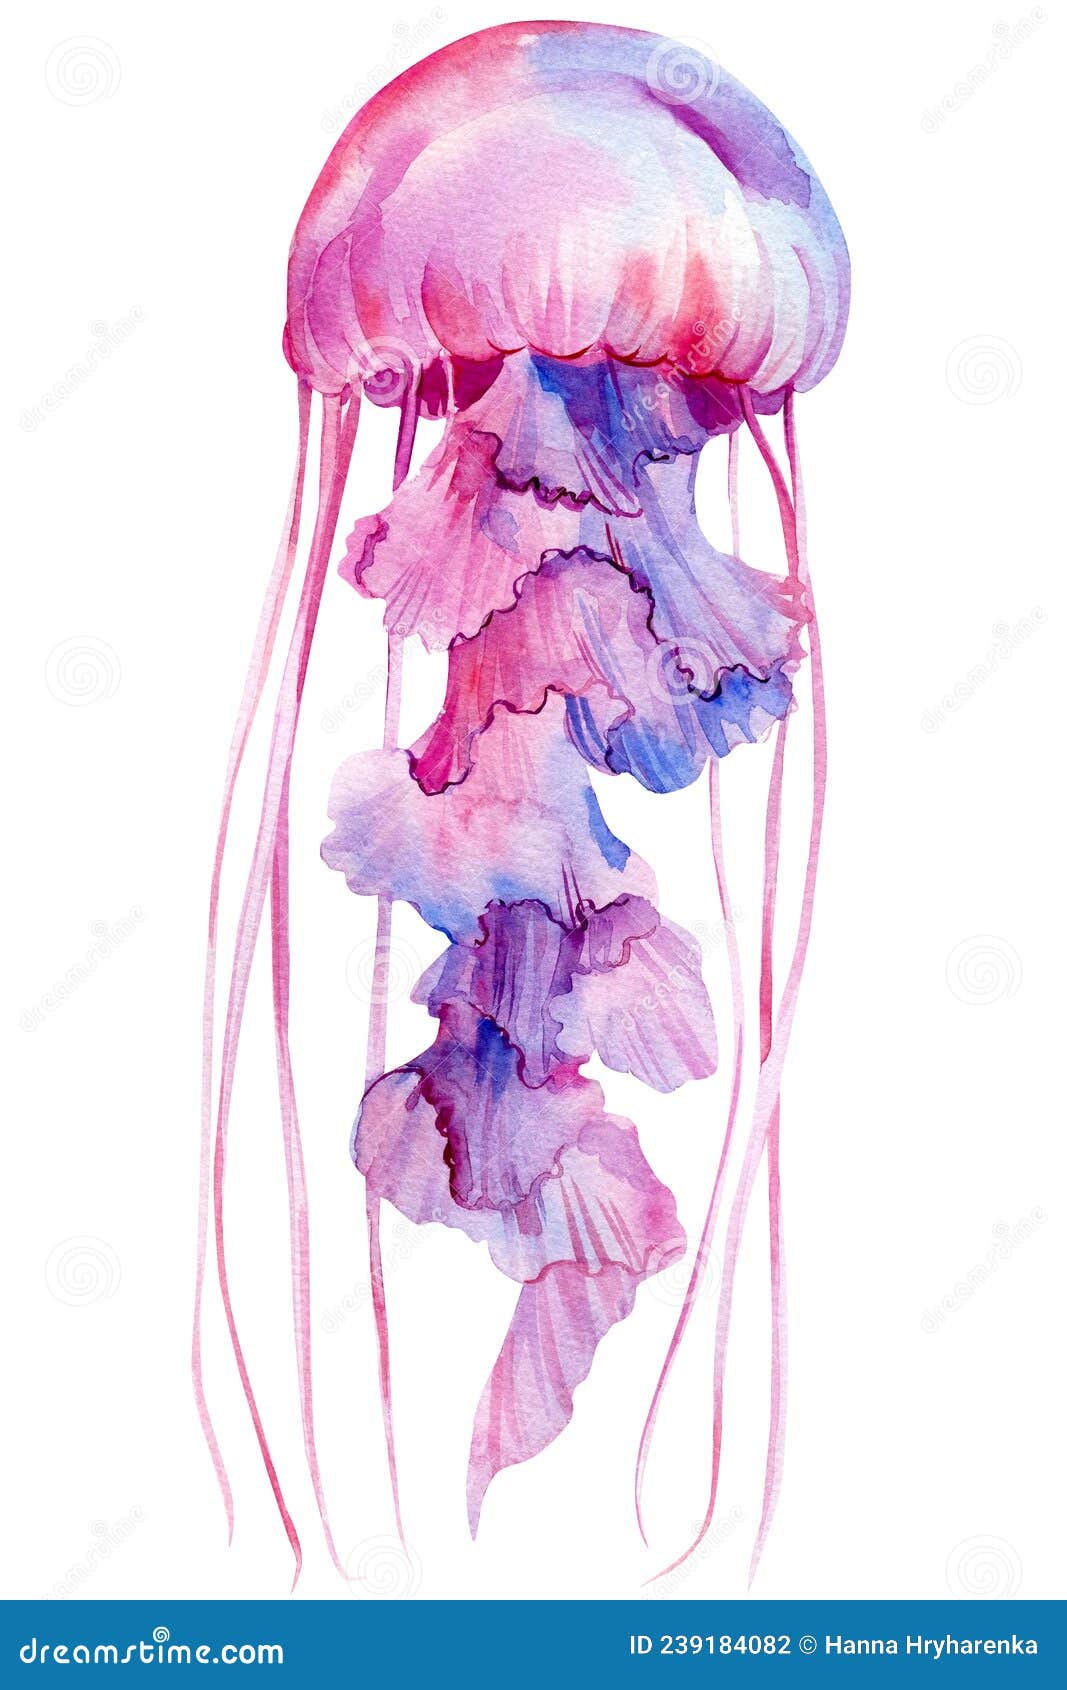 24 Majestic Jellyfish Tattoos  Jellyfish tattoo Tattoos Octopus tattoo  design